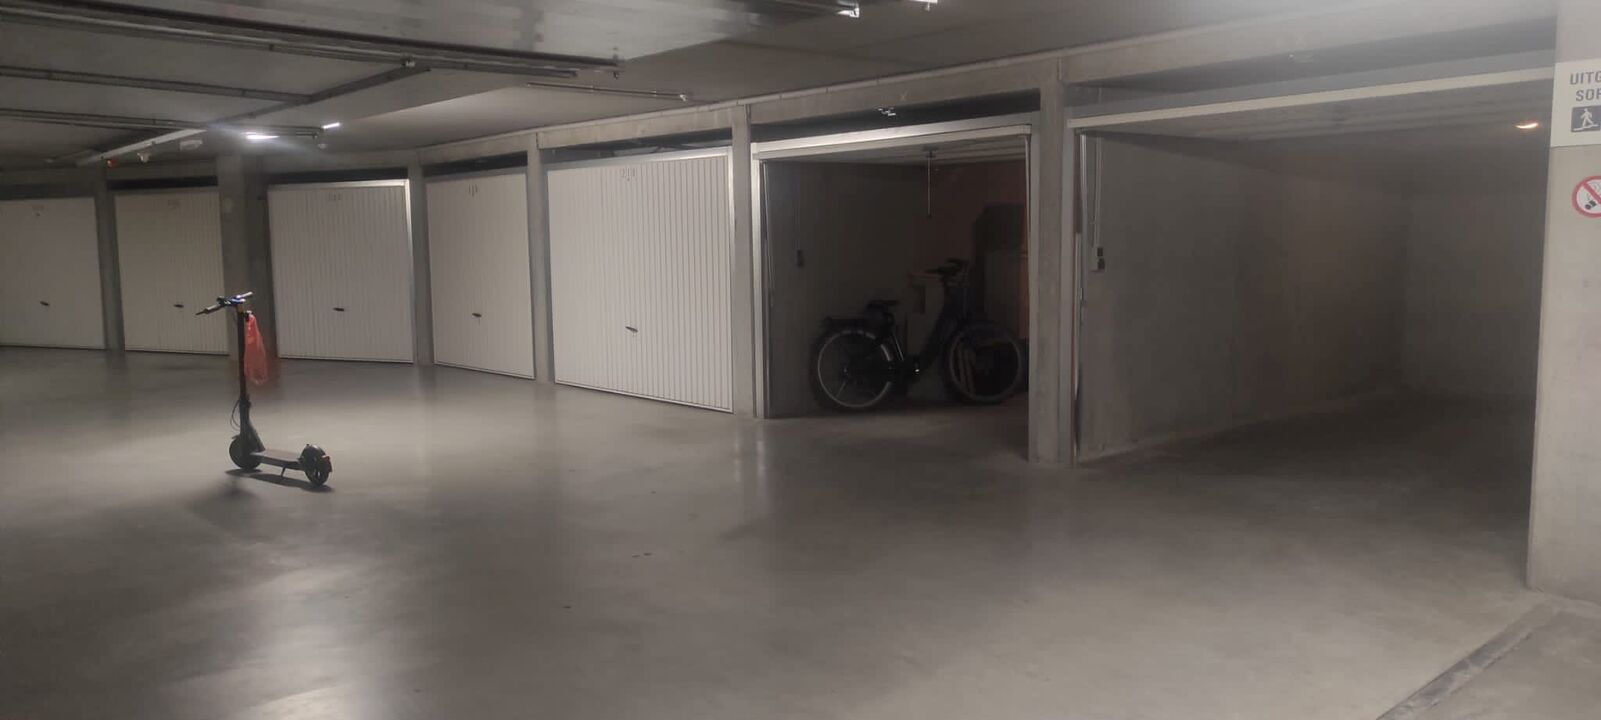 Sir Anthony - Zoutelaan: gesloten garagebox op niveau -3. foto 3